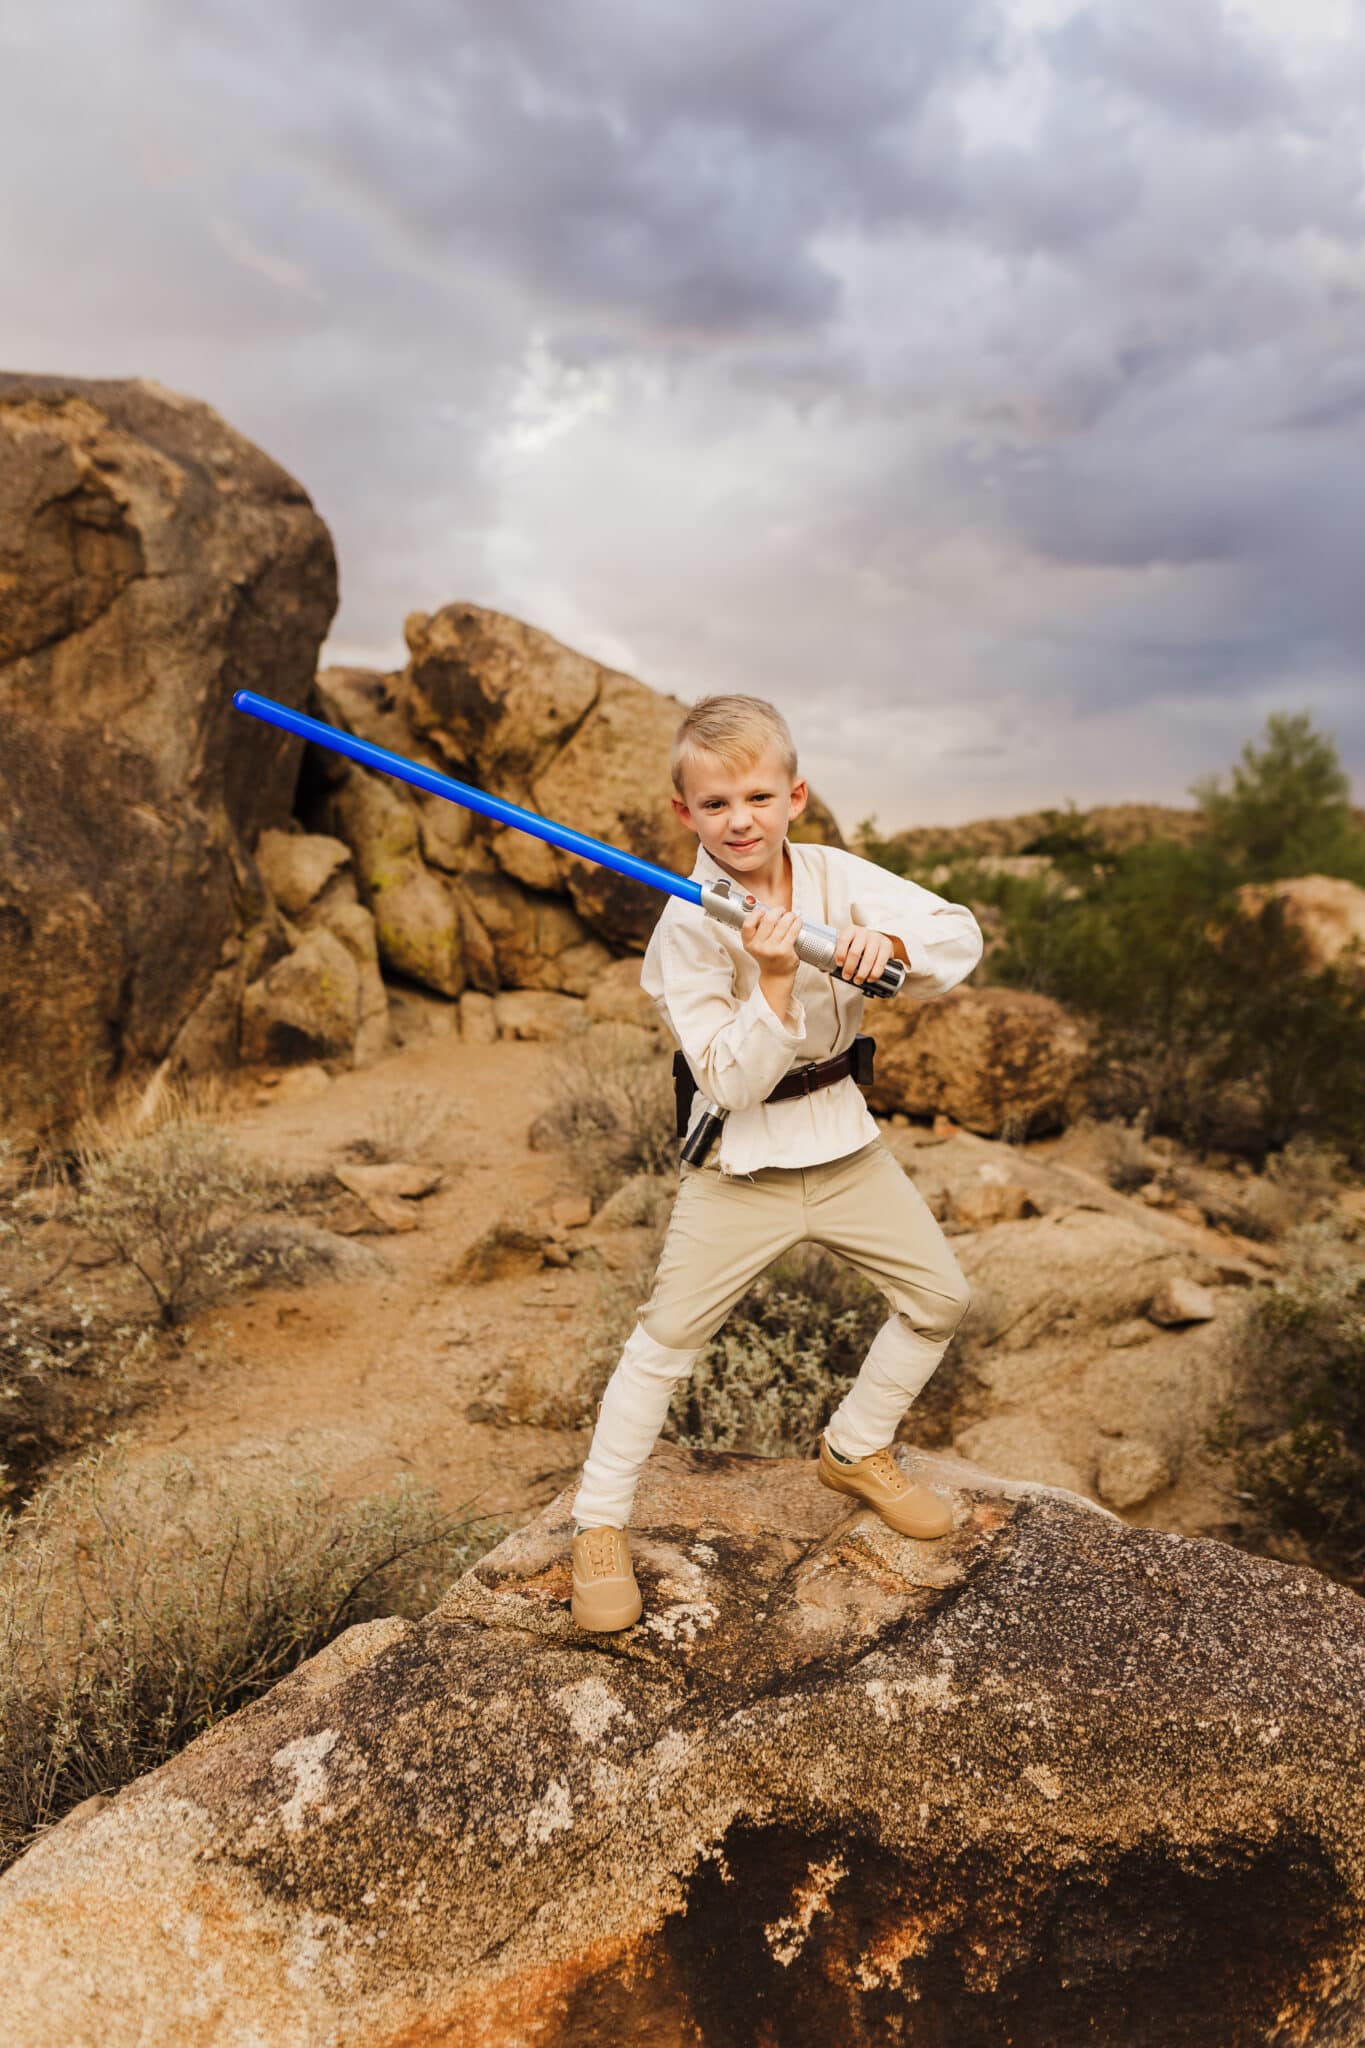 DIY Luke Skywalker Costume being modeled posing with a lightsaber. 